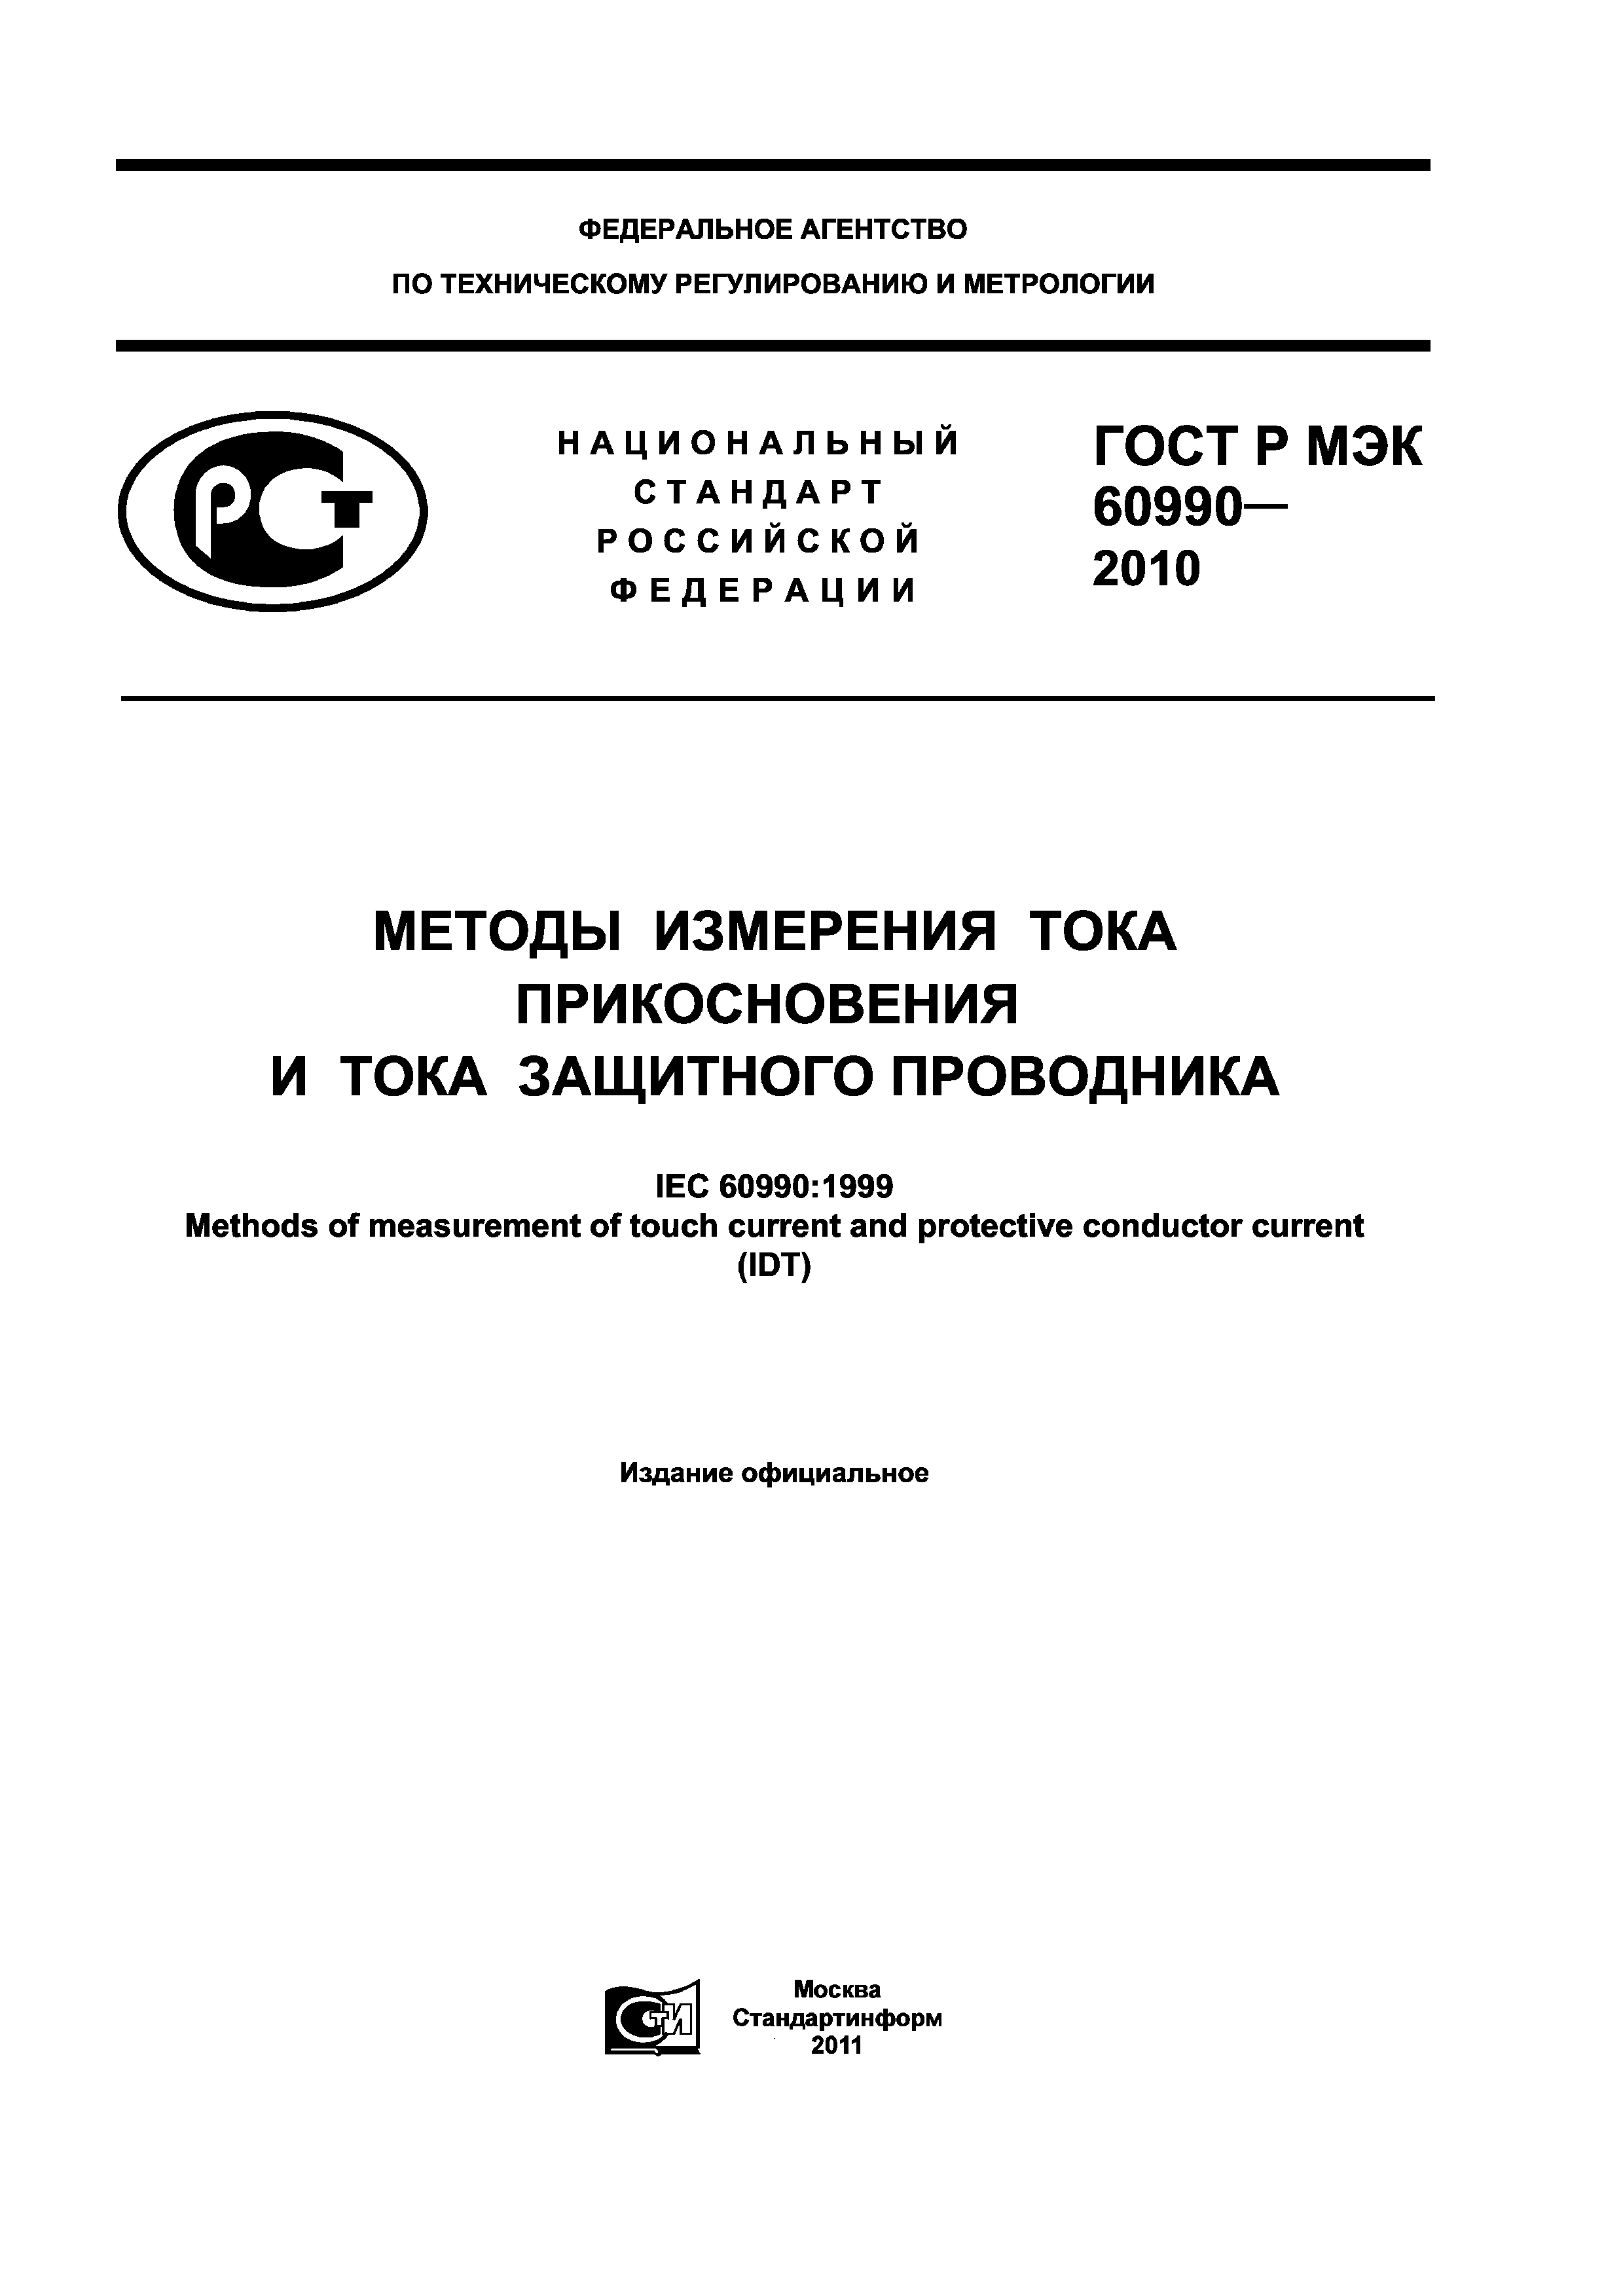 ГОСТ Р МЭК 60990-2010